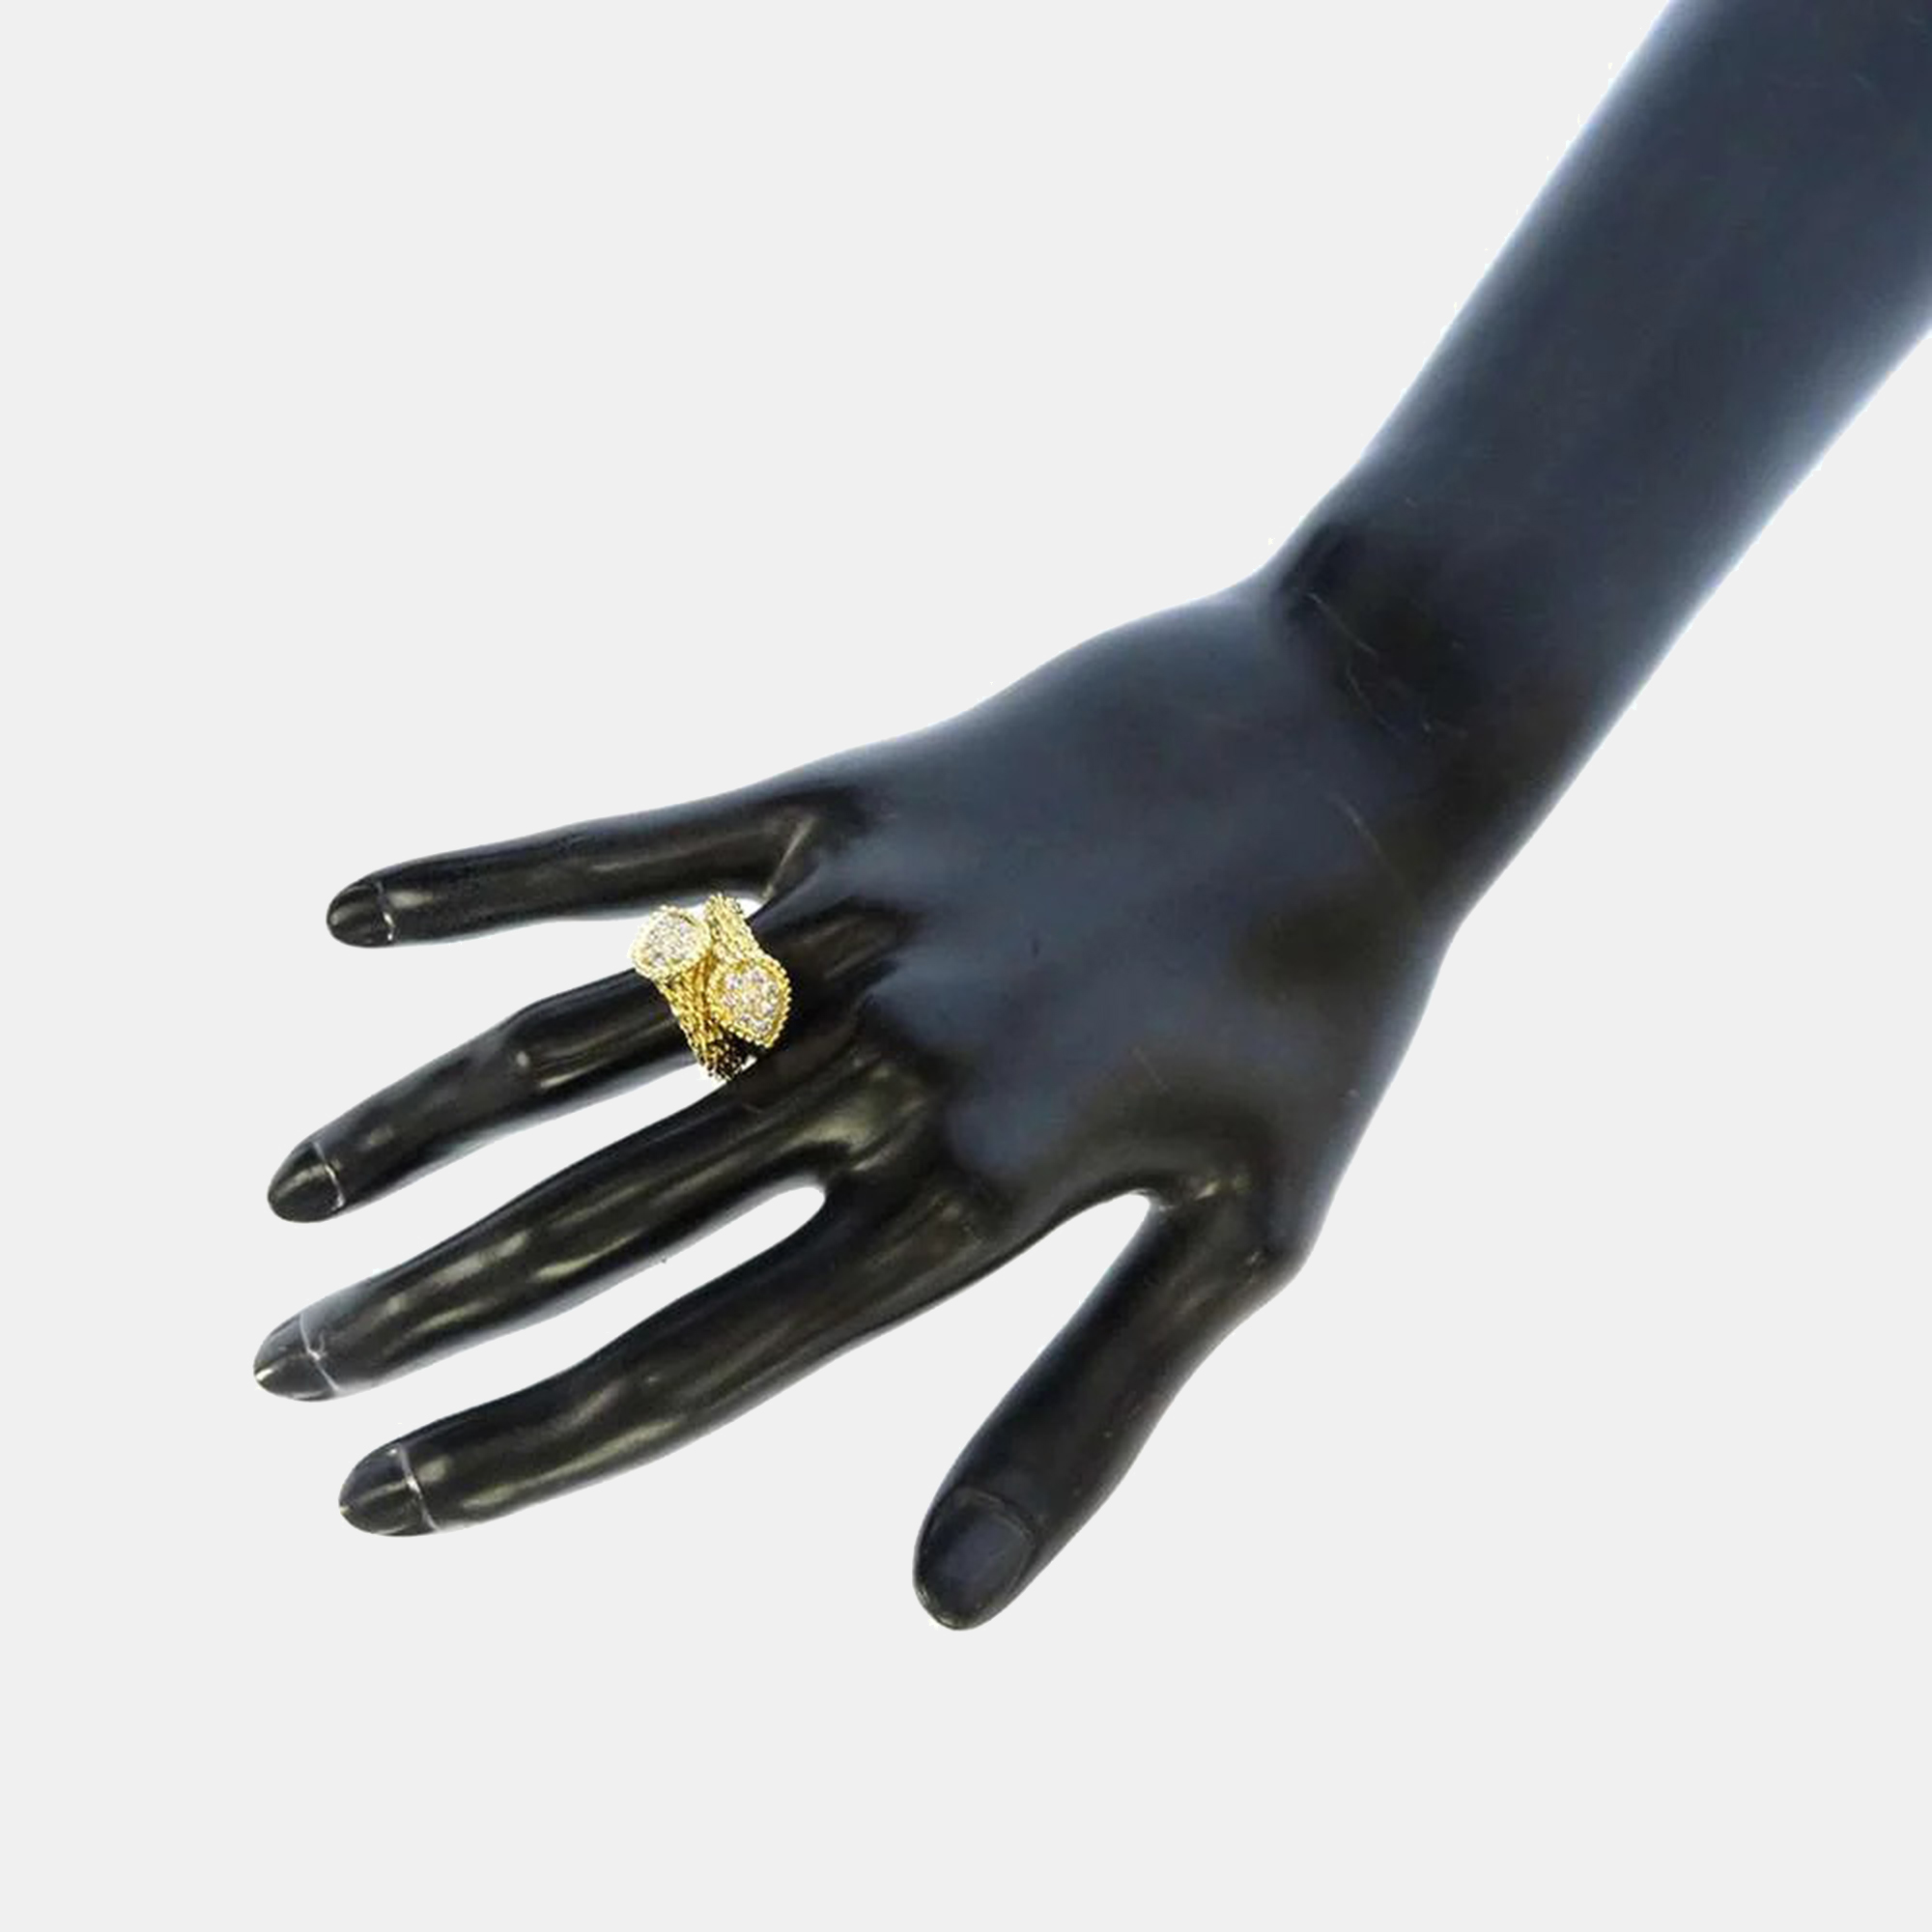 Boucheron 18K Yellow Gold Diamond Serpent Boheme Ring Size 54